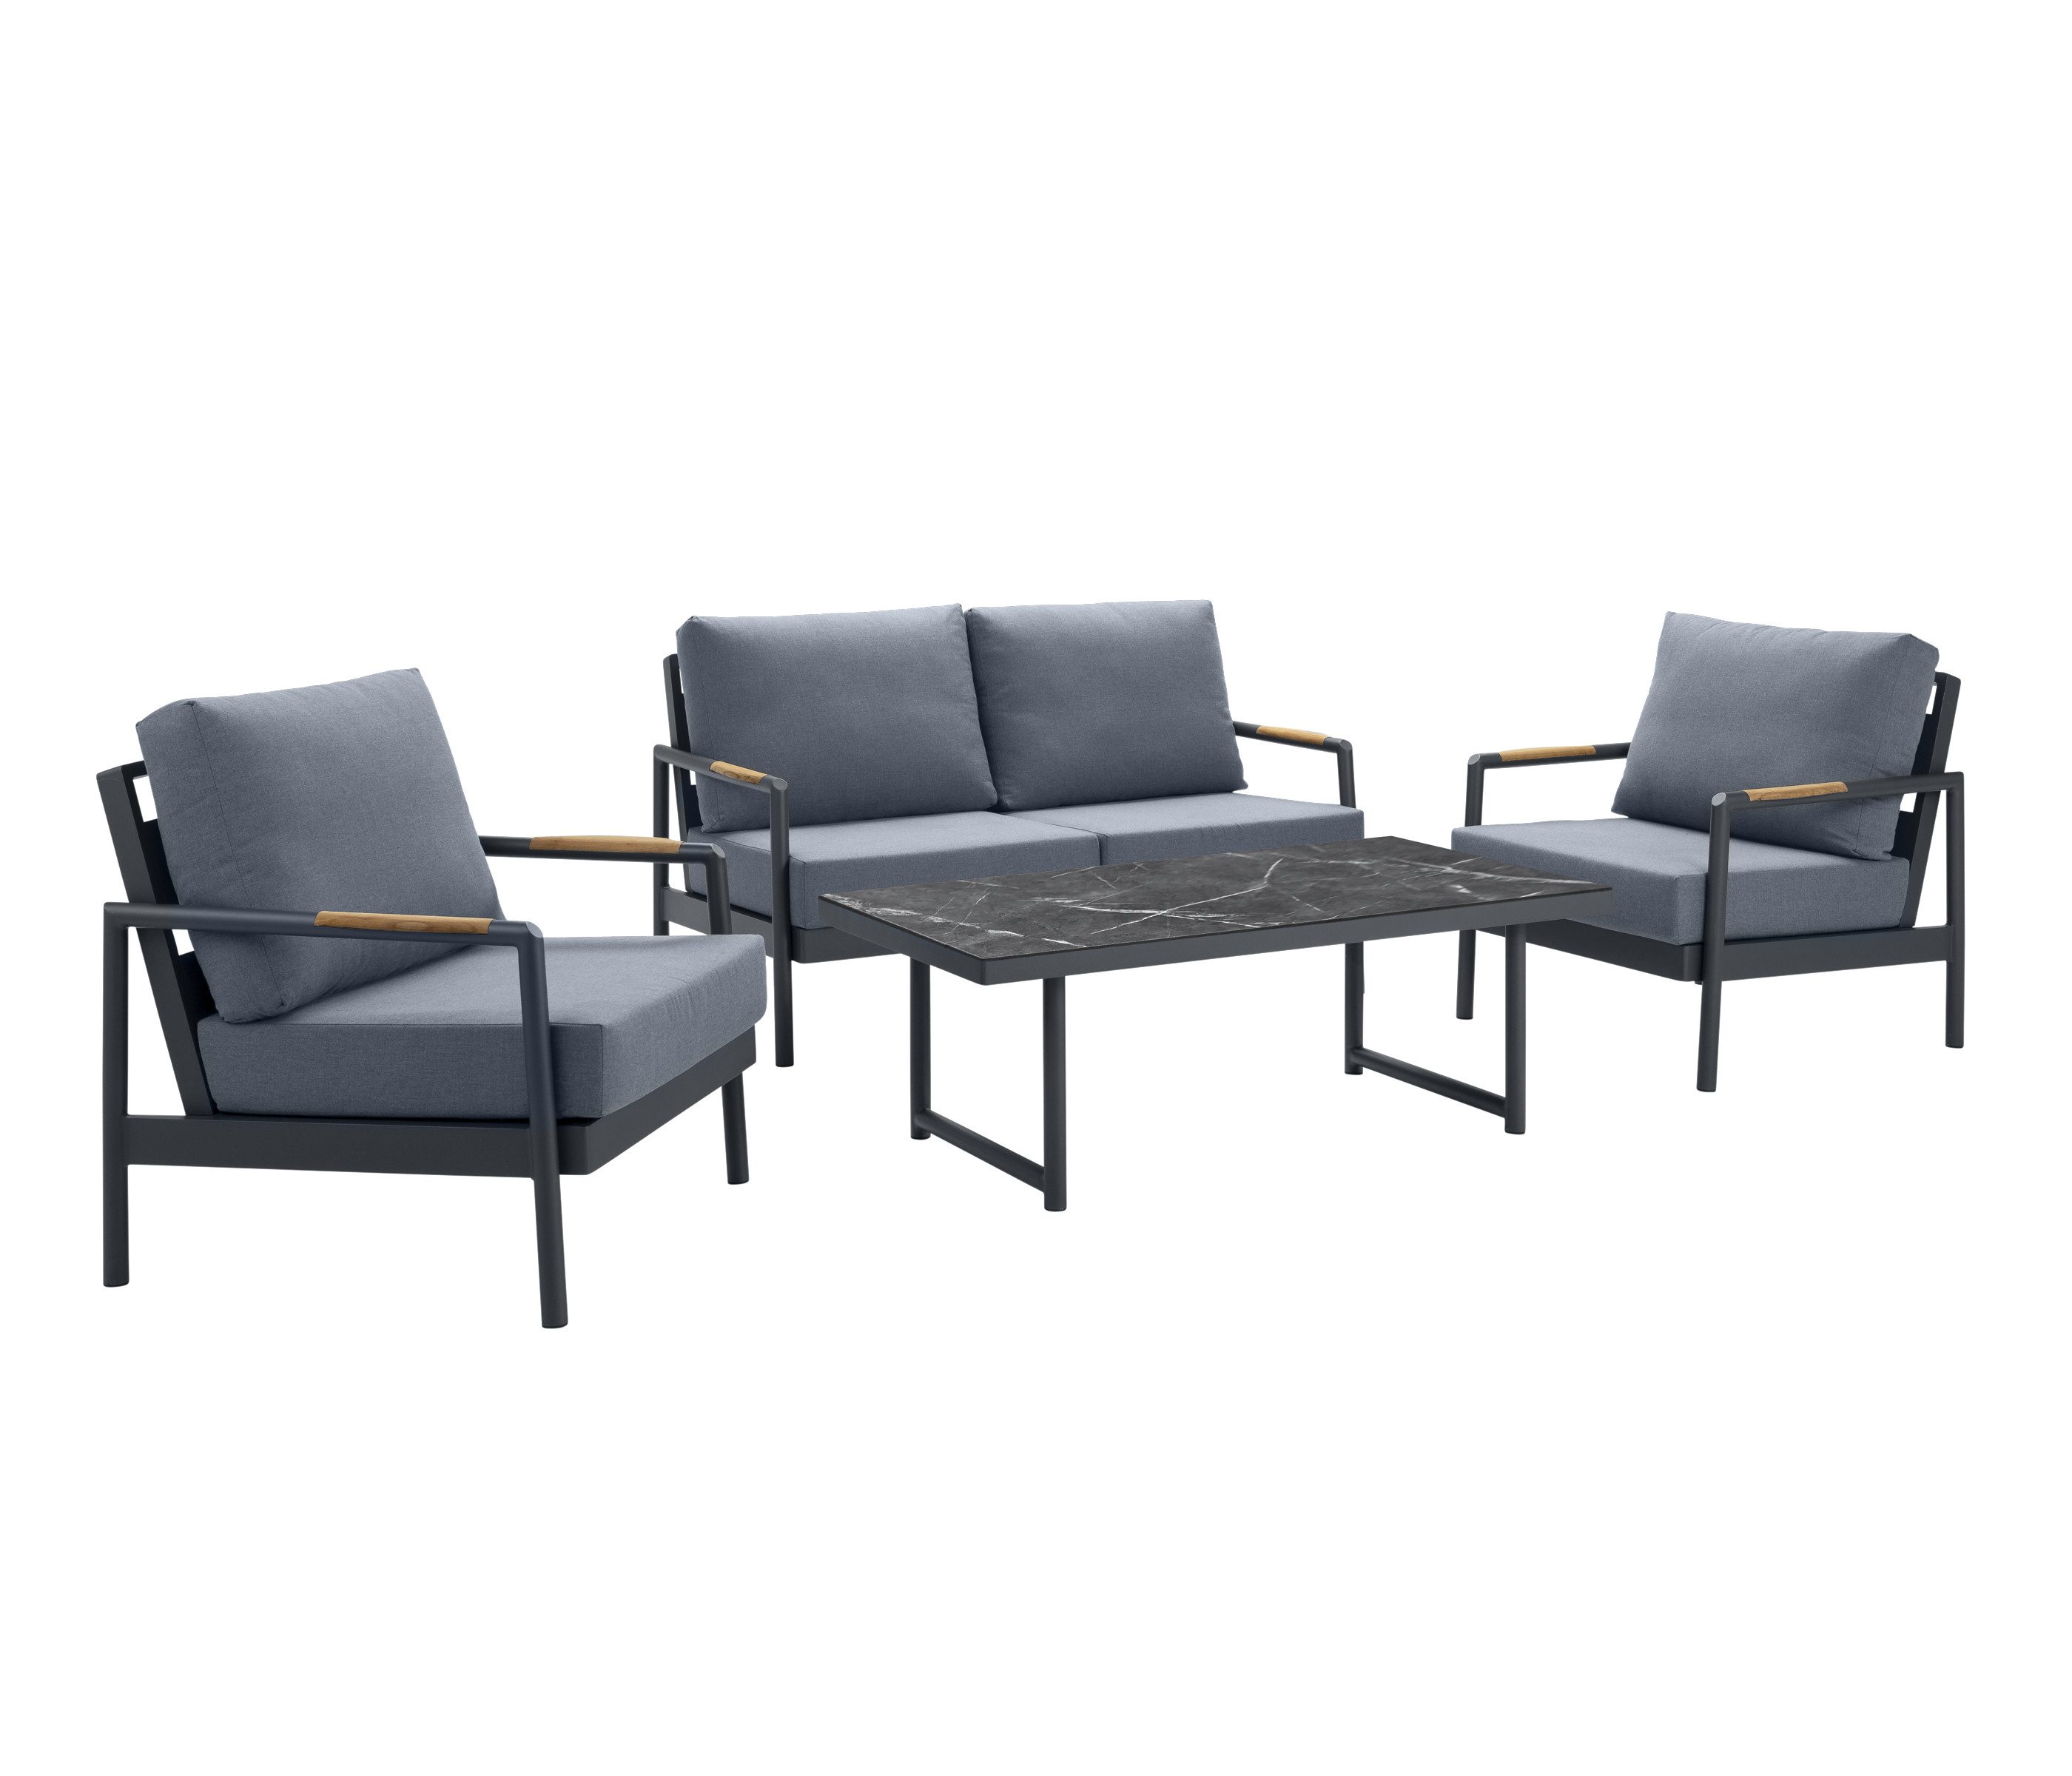 Dehner Gartenlounge-Set Brooklyn, 4-teilige Sitzgruppe, anthrazit, mit 2-Sitzer-Sofa, 2 Sesseln und 1 Tisch, inkl. gemütliche Polster